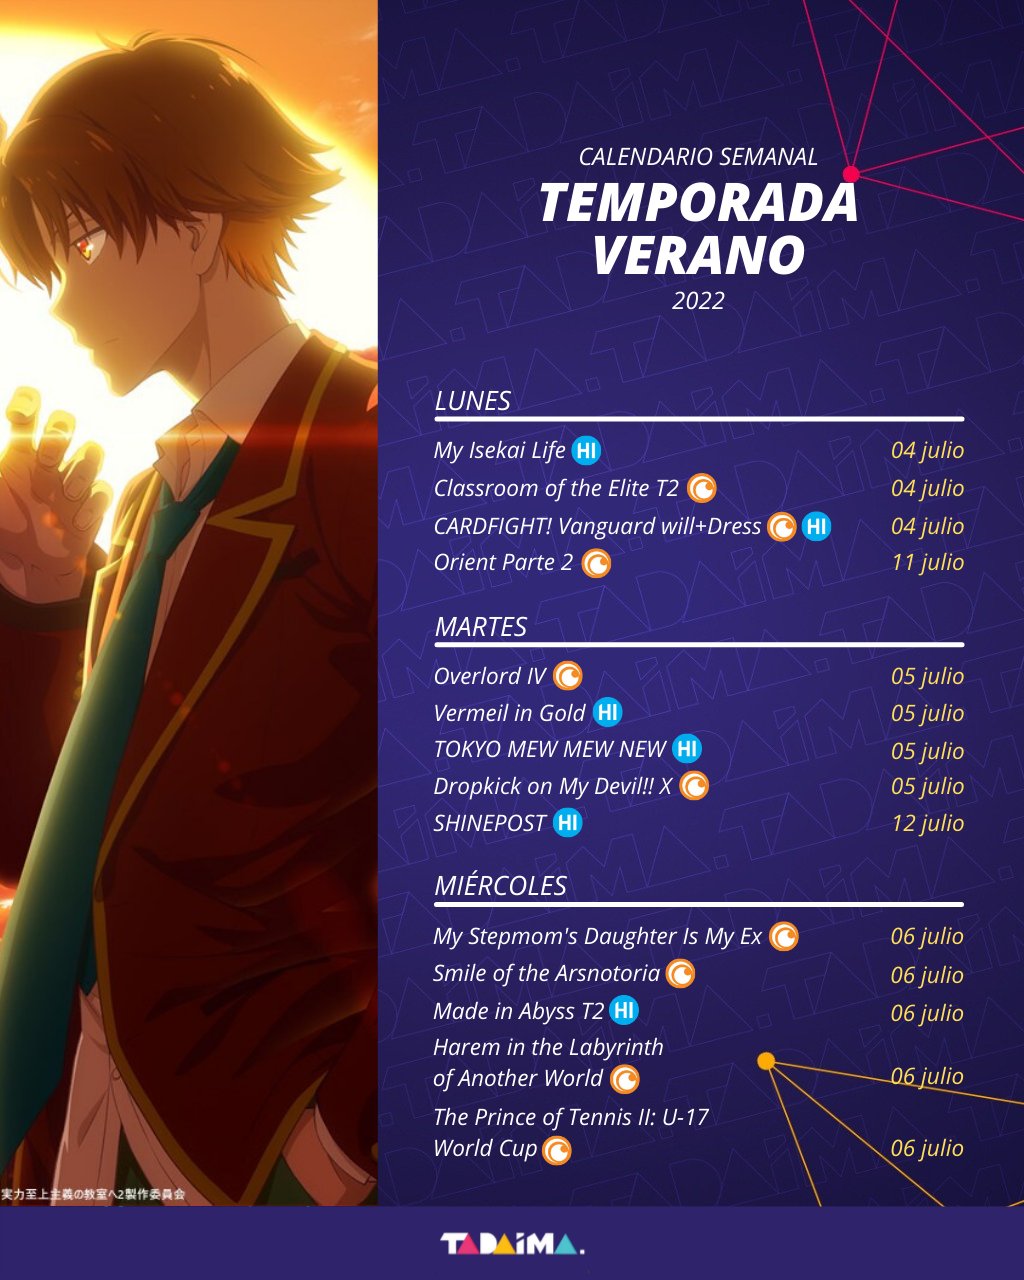 Edens Zero 2nd Season  Anime Onegai, La plataforma de anime para  Latinoamérica